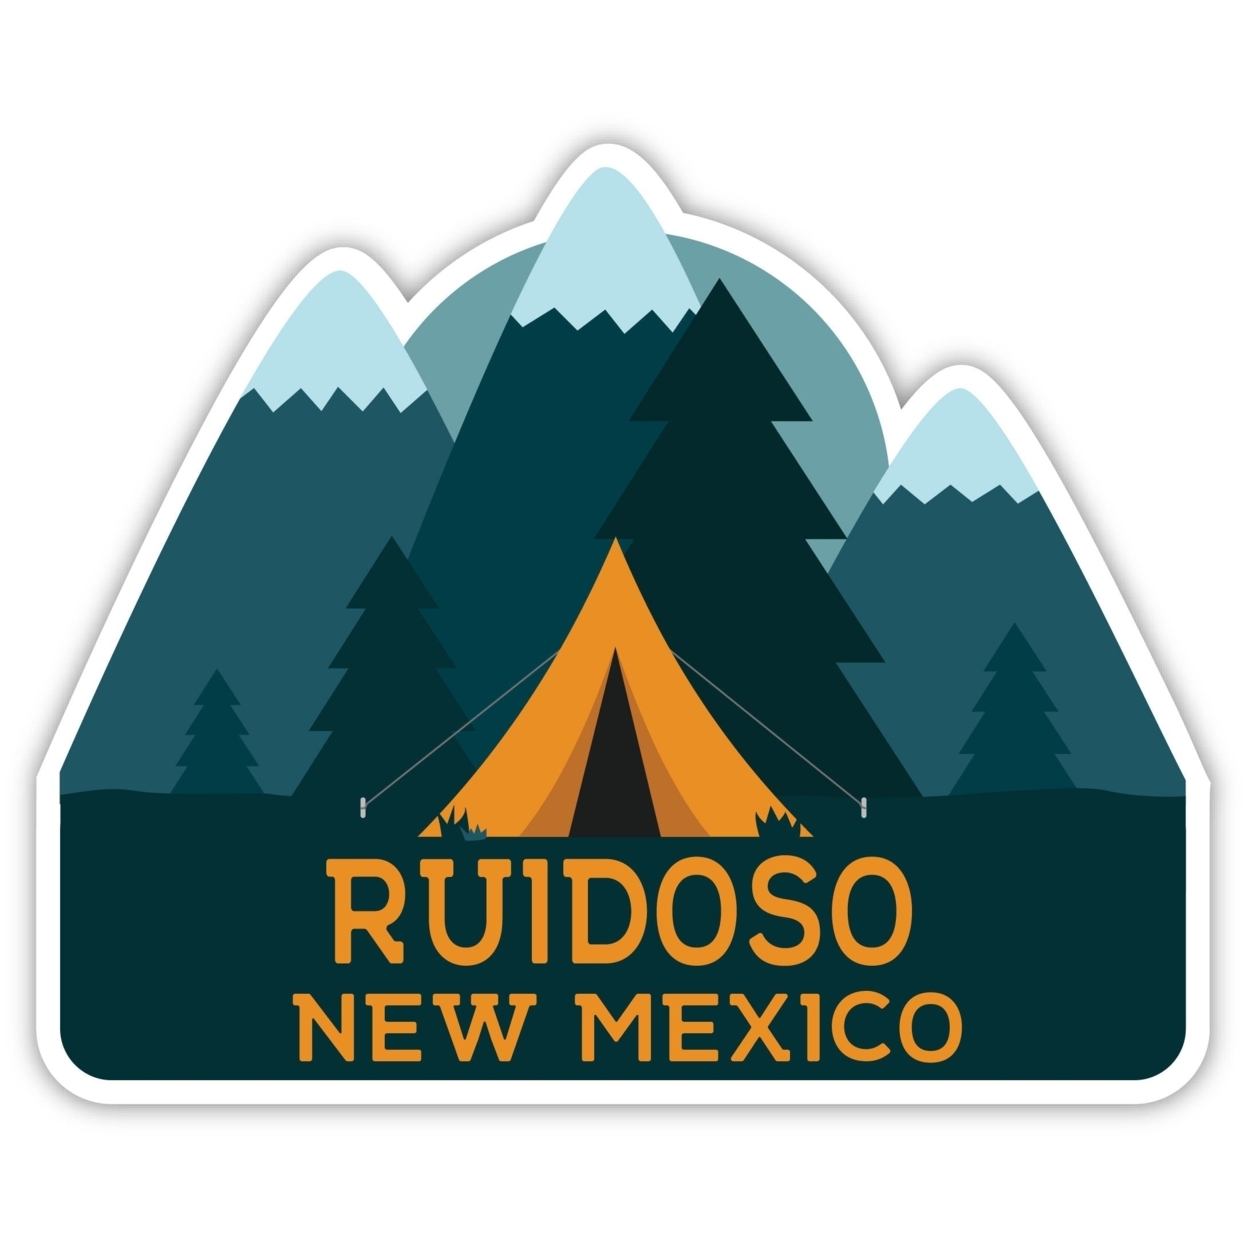 Ruidoso New Mexico Souvenir Decorative Stickers (Choose Theme And Size) - Single Unit, 4-Inch, Tent